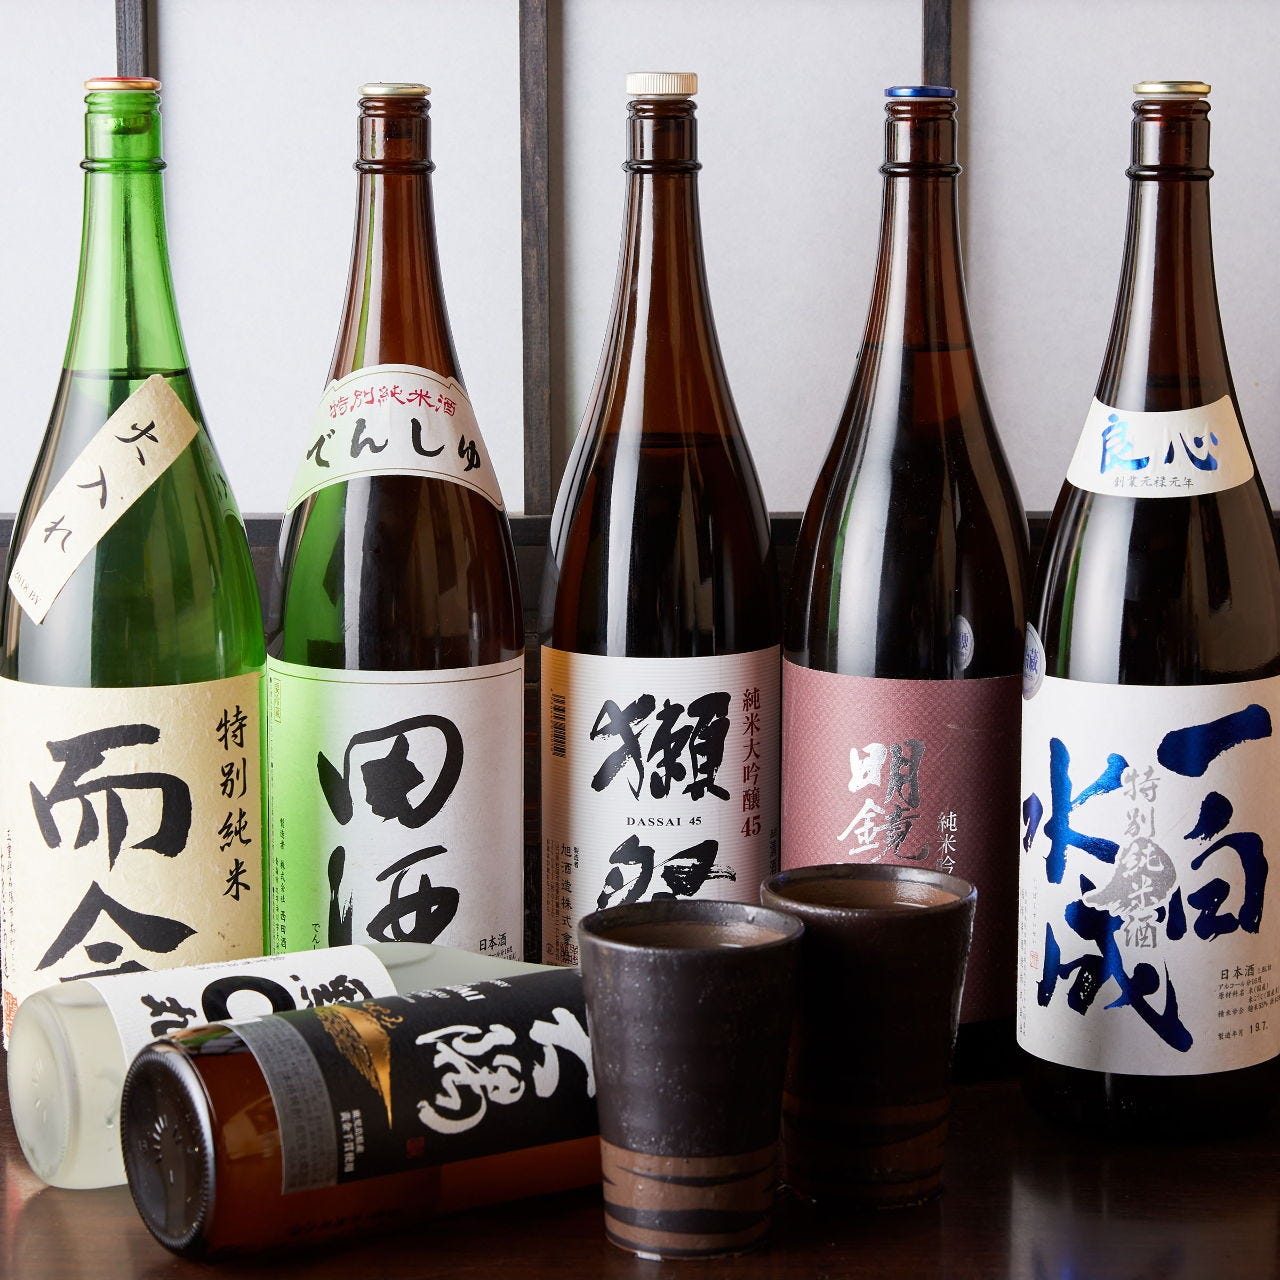 多彩な日本酒は当店を楽しむうえで欠かせないアイテムです。